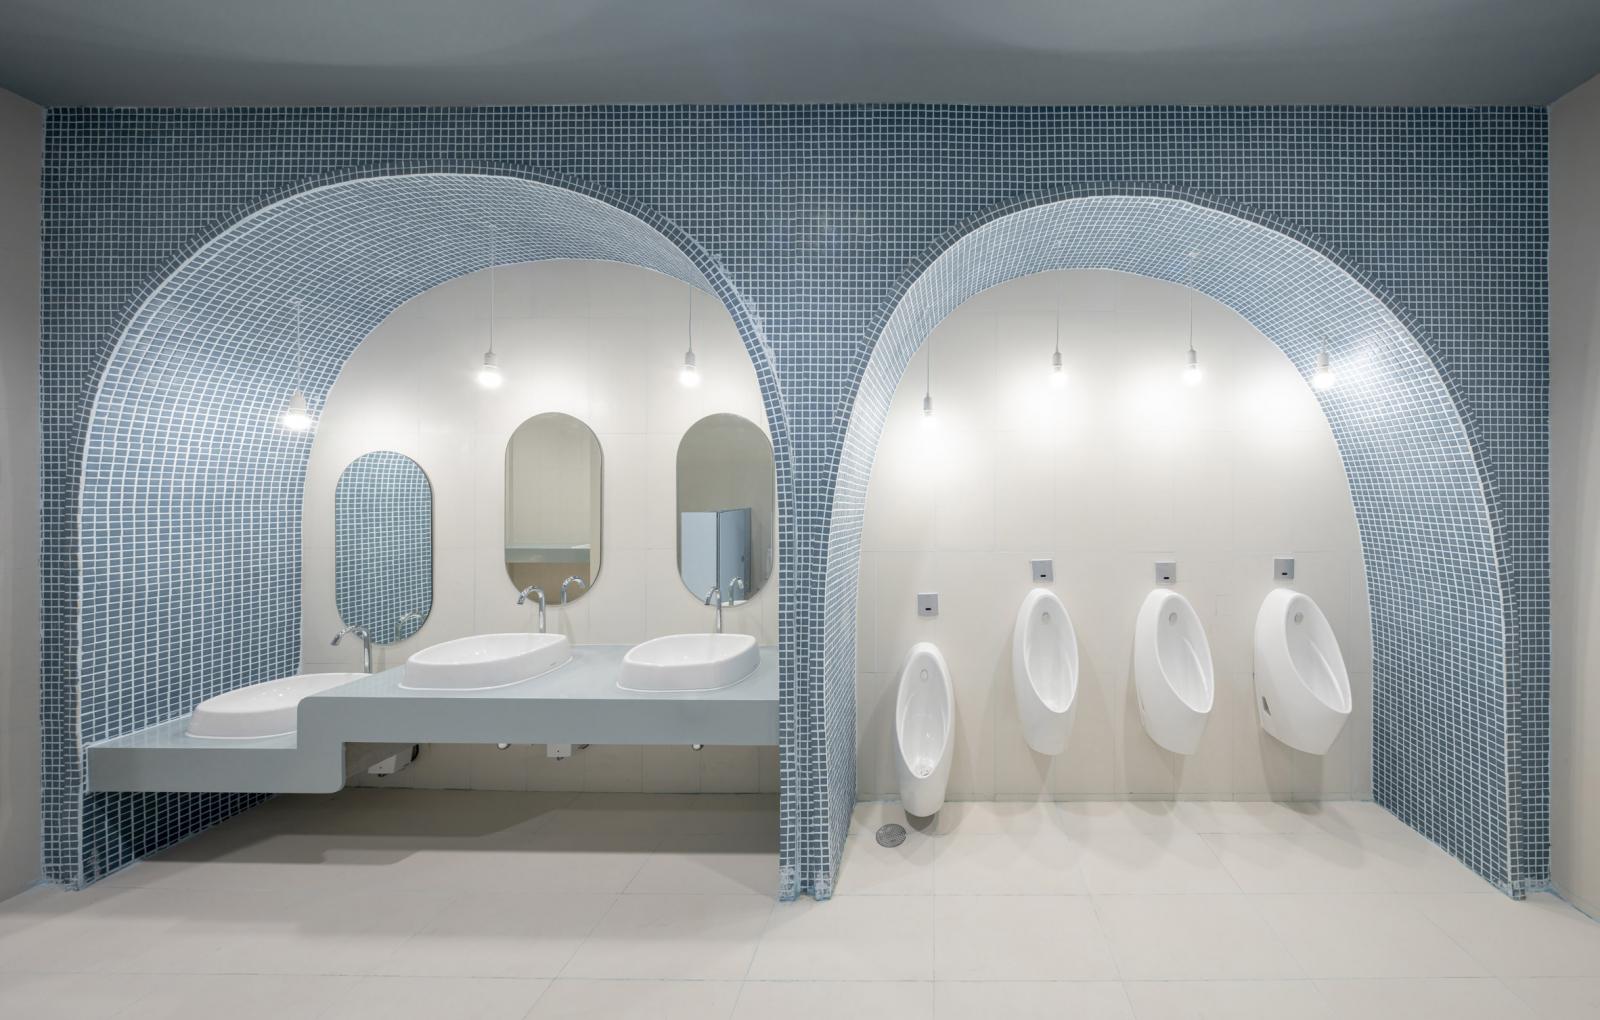 Phòng vệ sinh nam có thiết kế tương tự với gạch ốp màu xanh dương nhẹ nhàng.